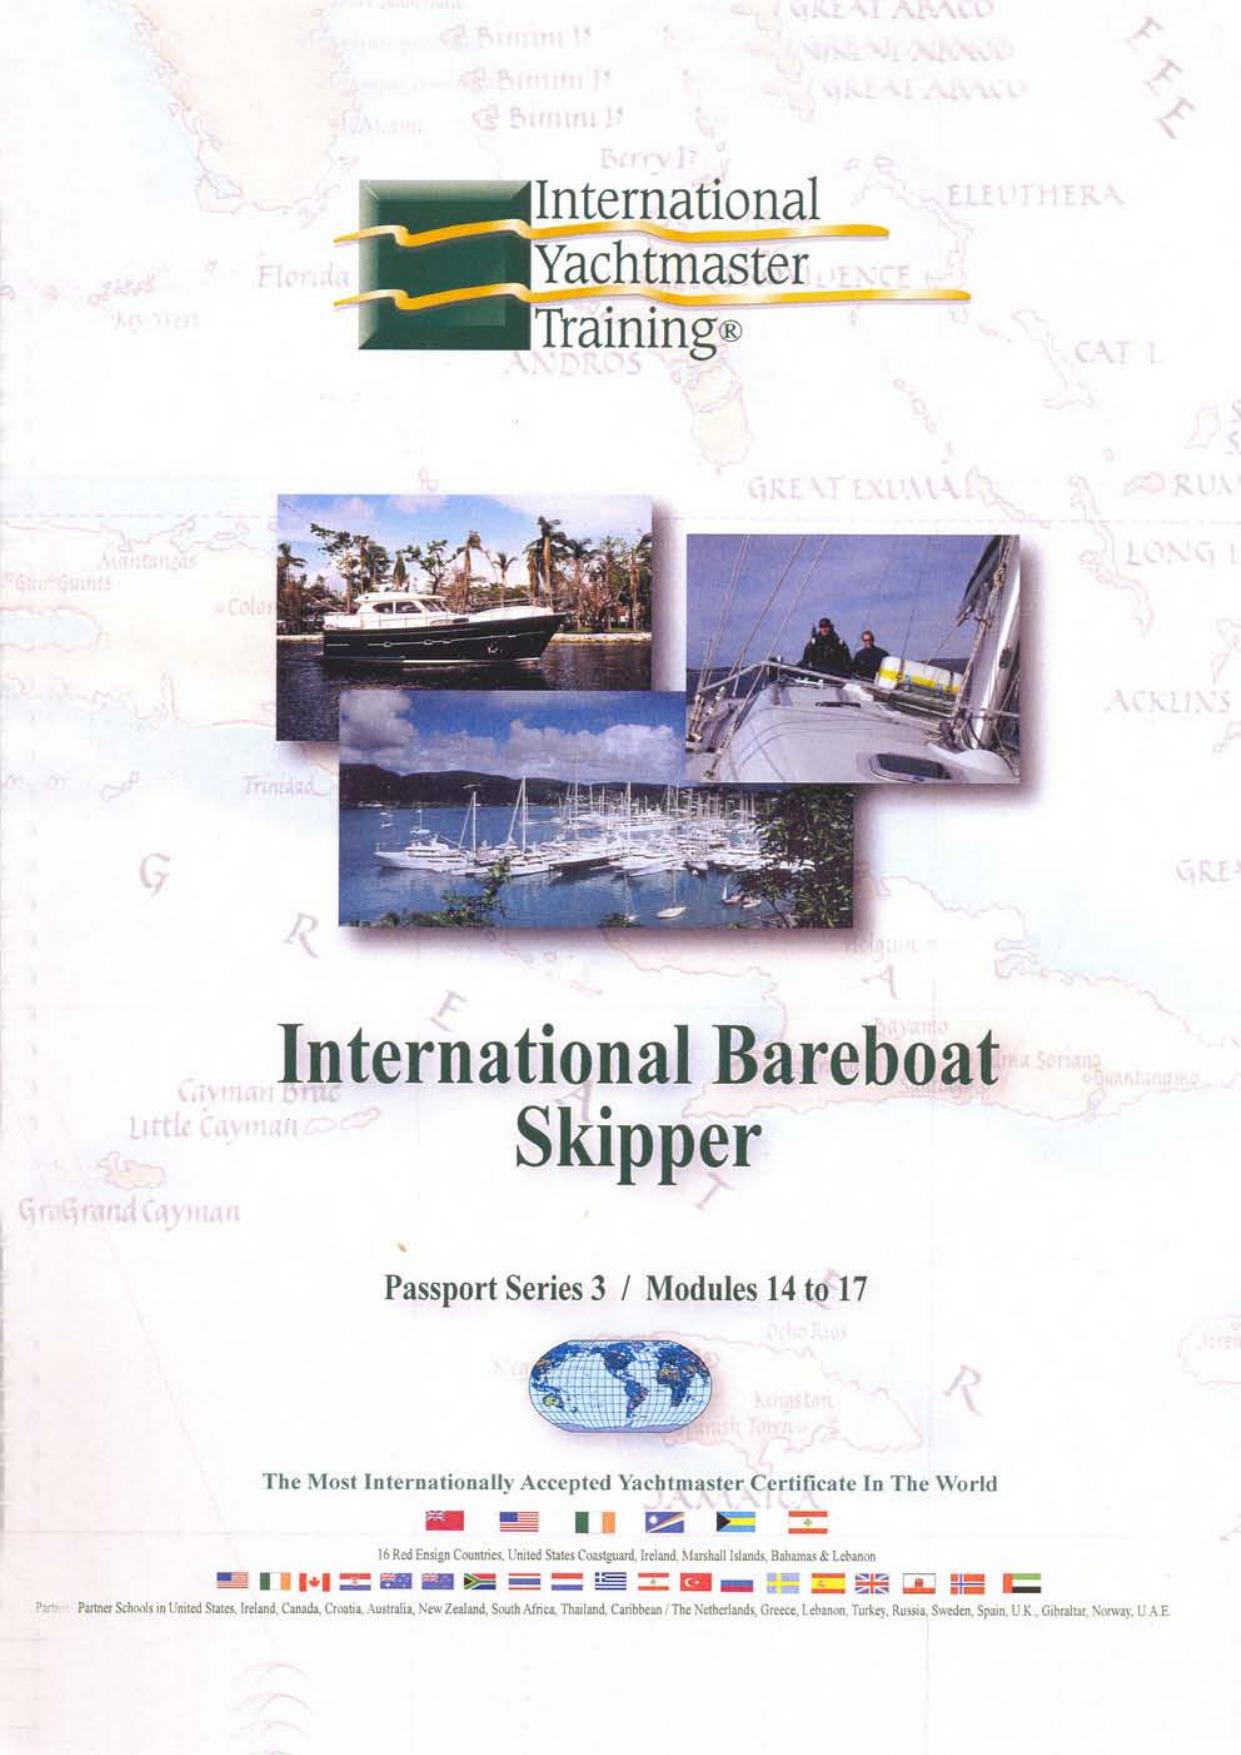 International Bareboat Skipper: Certificate